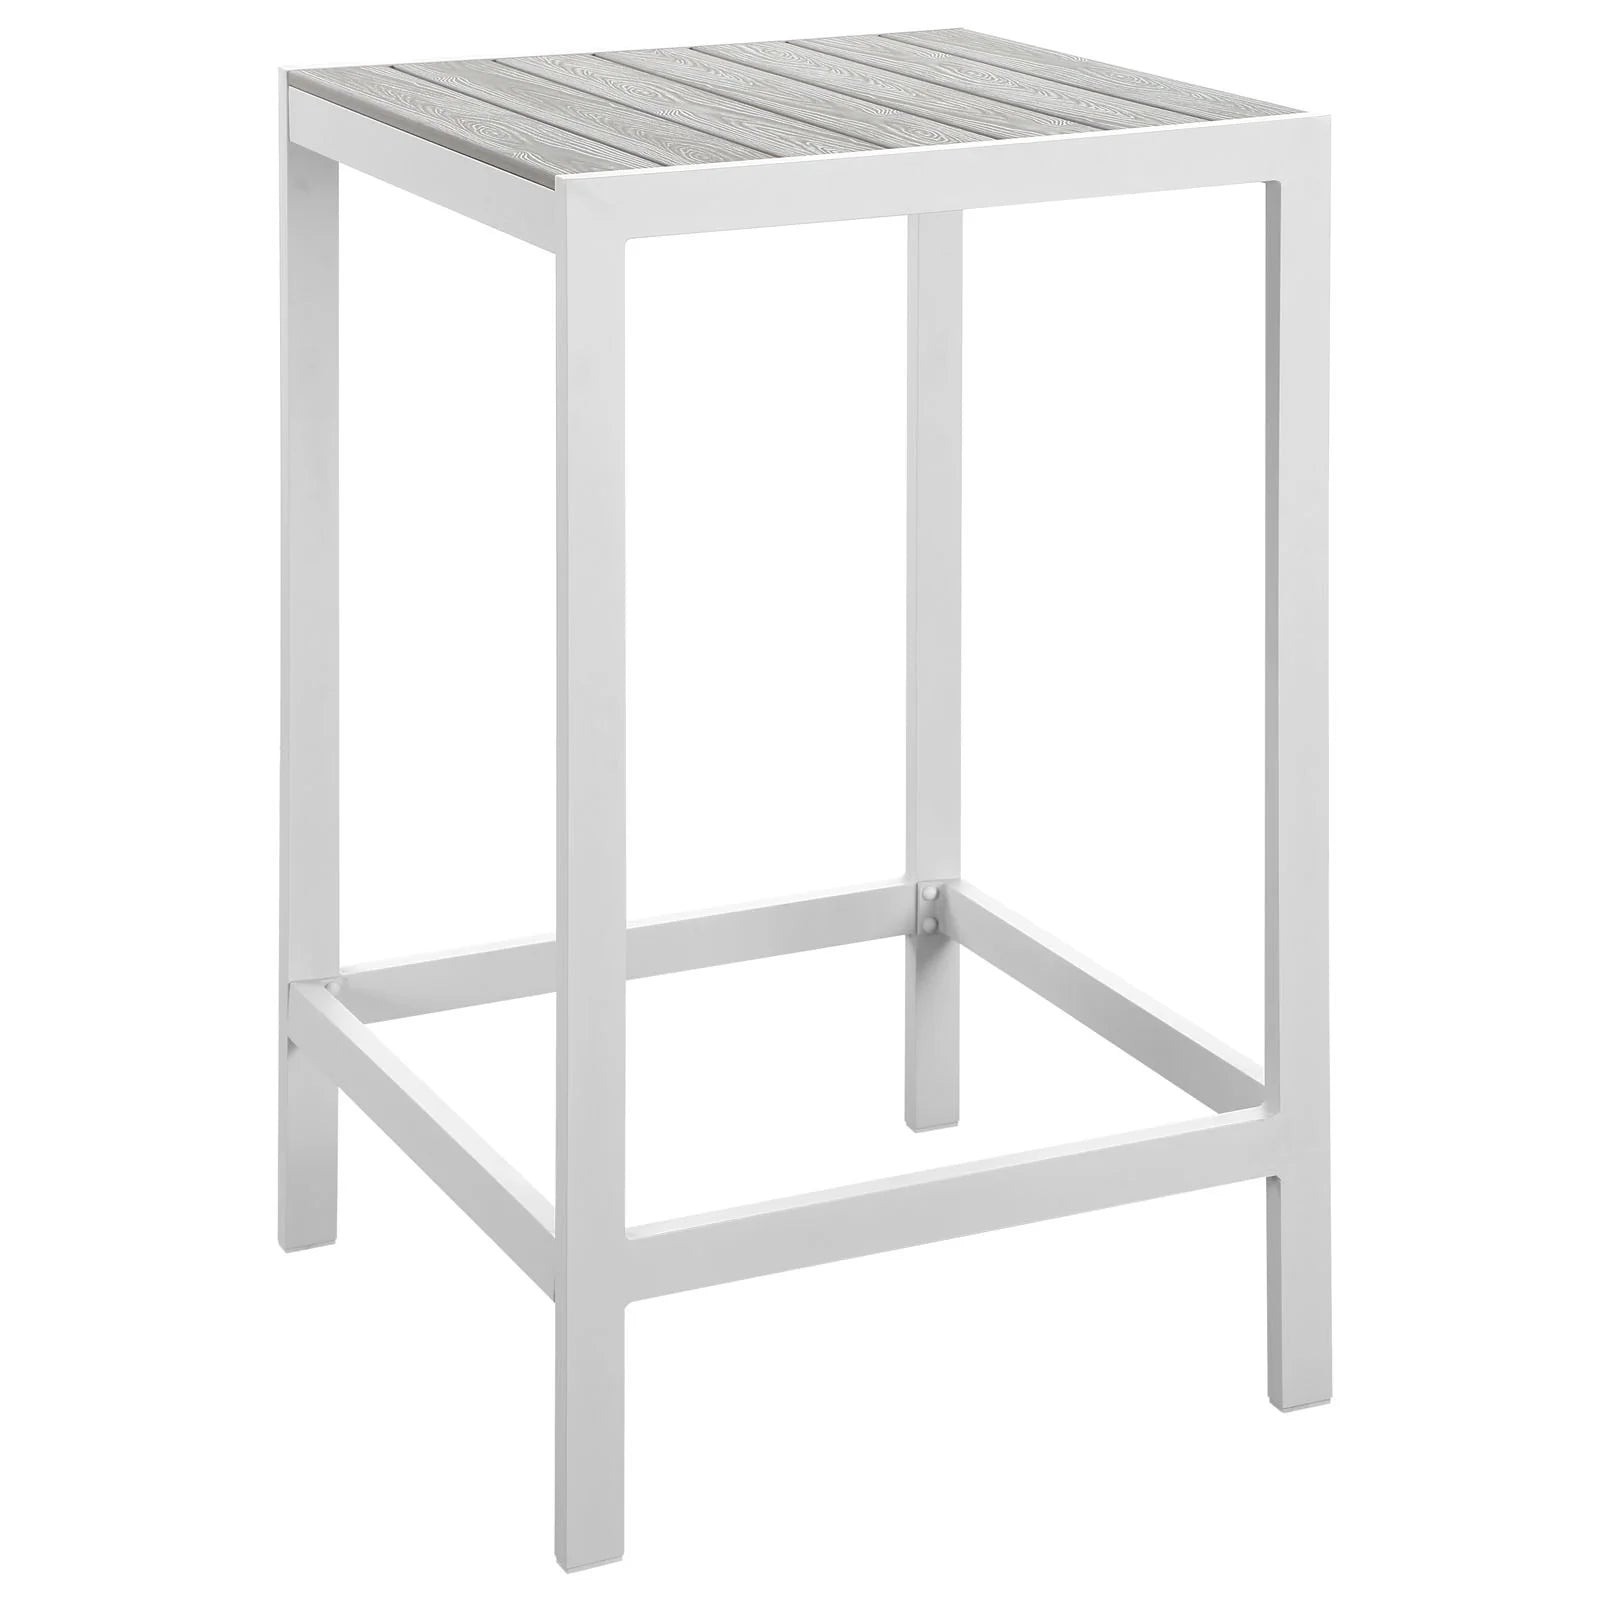 Mesa de barra para exterior de madera sintética y aluminio Lore color gris claro.